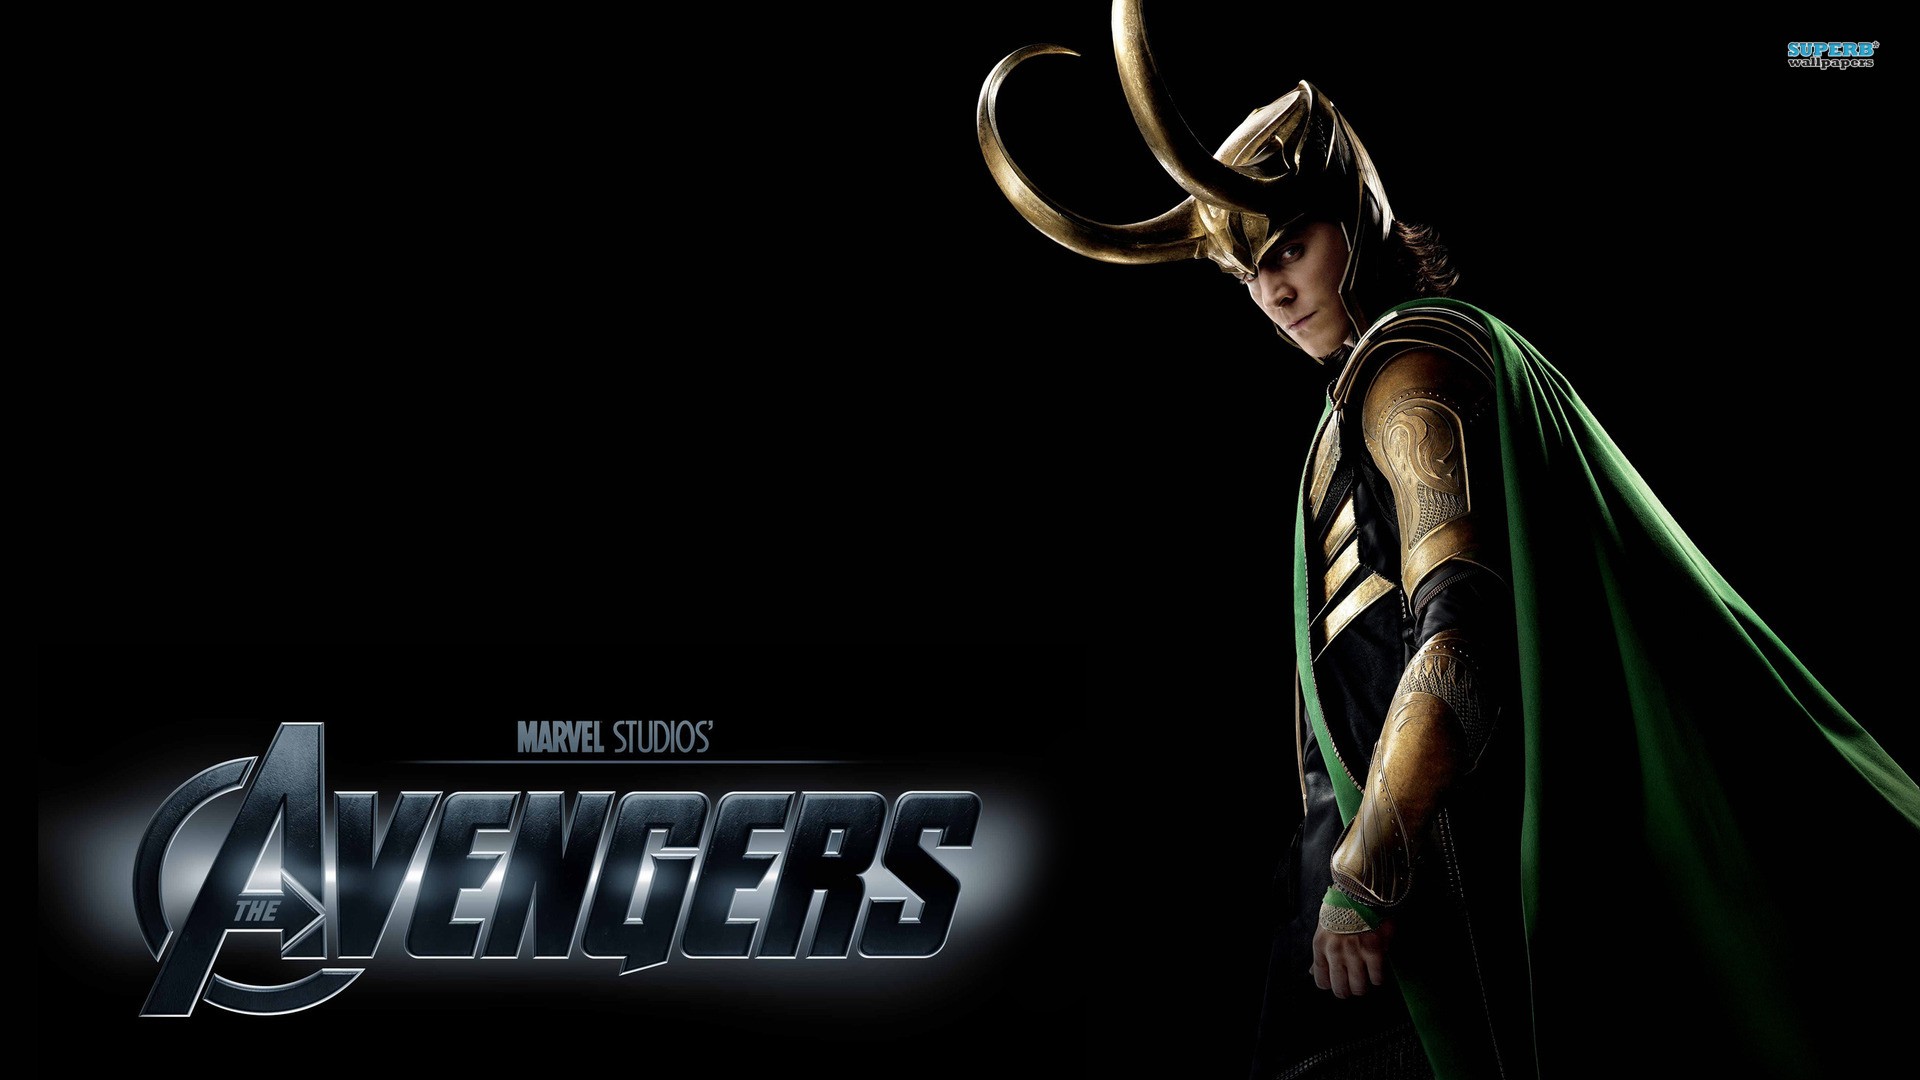 The Avengers, Loki, Tom Hiddleston Wallpaper